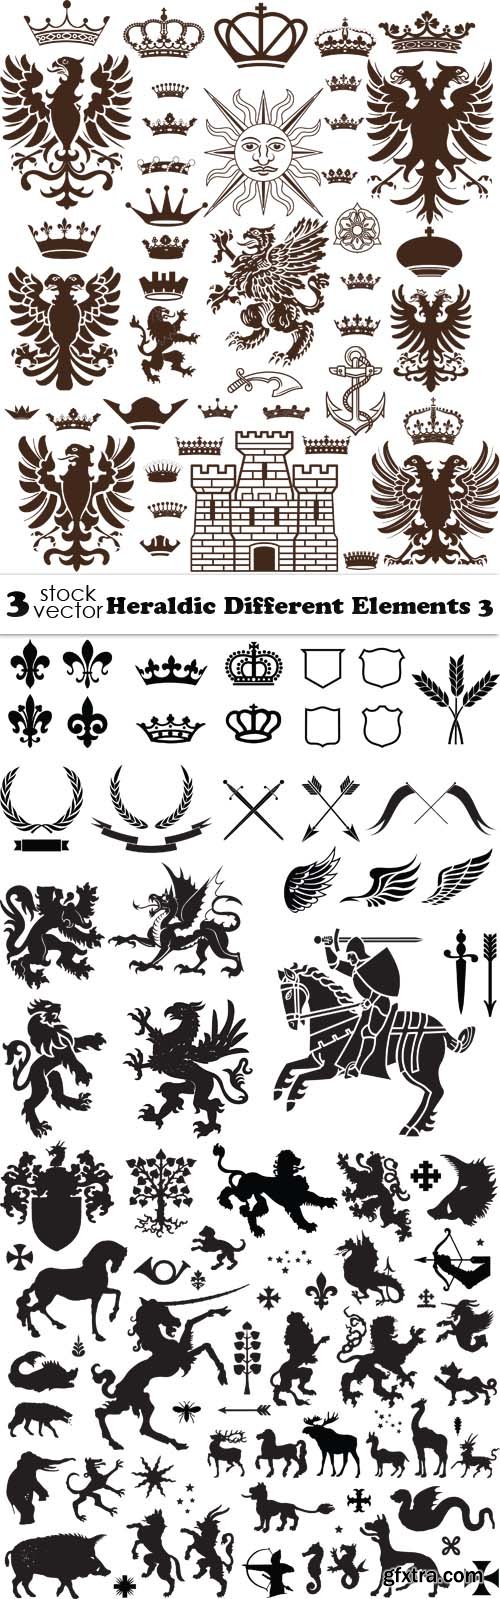 Vectors - Heraldic Different Elements 3